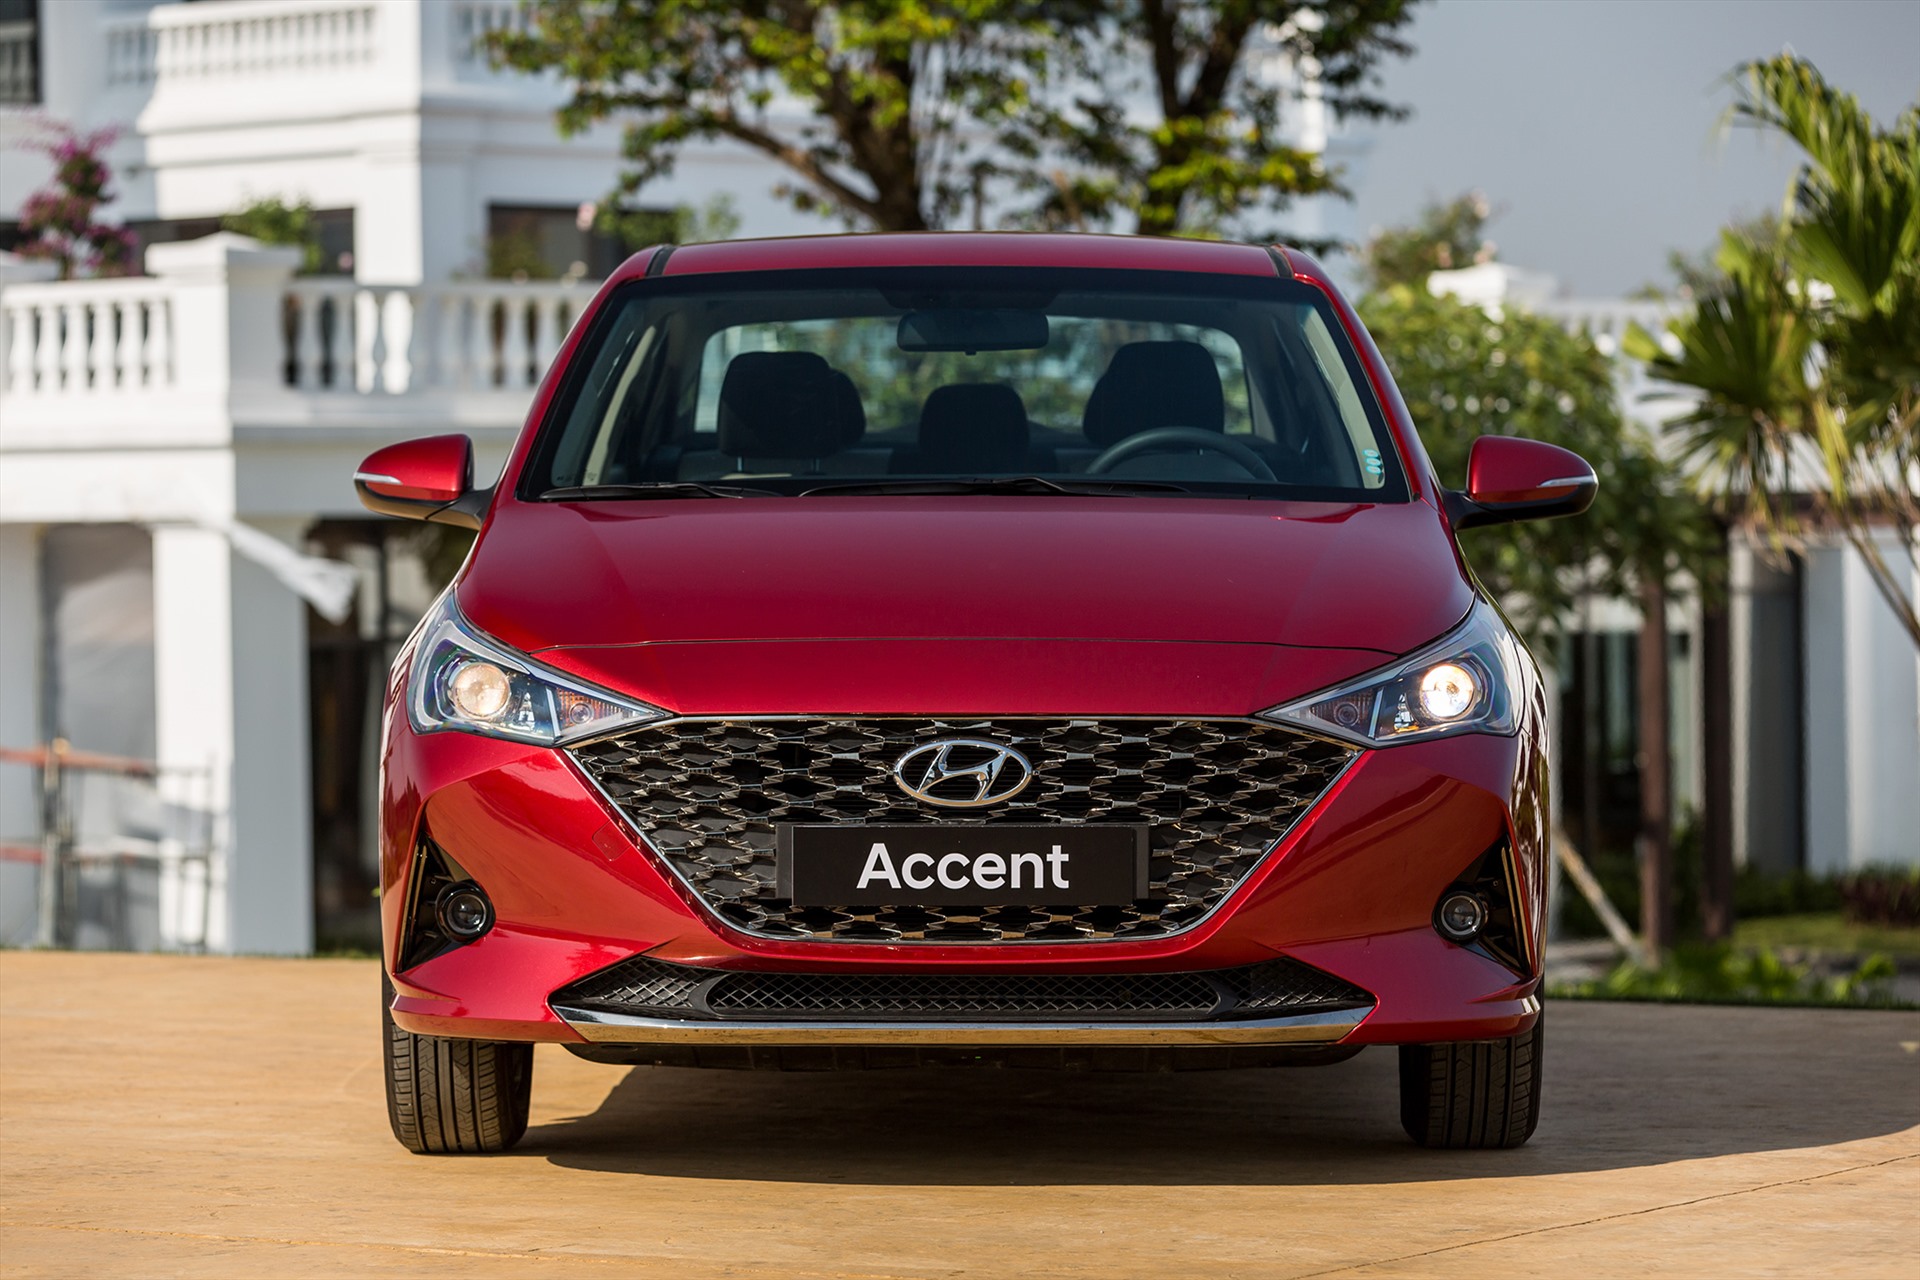 Hyundai Accent giá bán từ 426-542 triệu đồng. Mẫu xe này đạt doanh số 7.452 chiếc bán ra sau 6 tháng đầu năm 2023. Accent hiện là mẫu ôtô trong tầm giá 500 triệu đồng ăn khách nhất Việt Nam. Accent cũng đang dẫn đầu doanh số phân khúc sedan hạng B và đứng thứ ba trong top 10 ôtô bán chạy nhất toàn thị trường. Ảnh: TC Motor